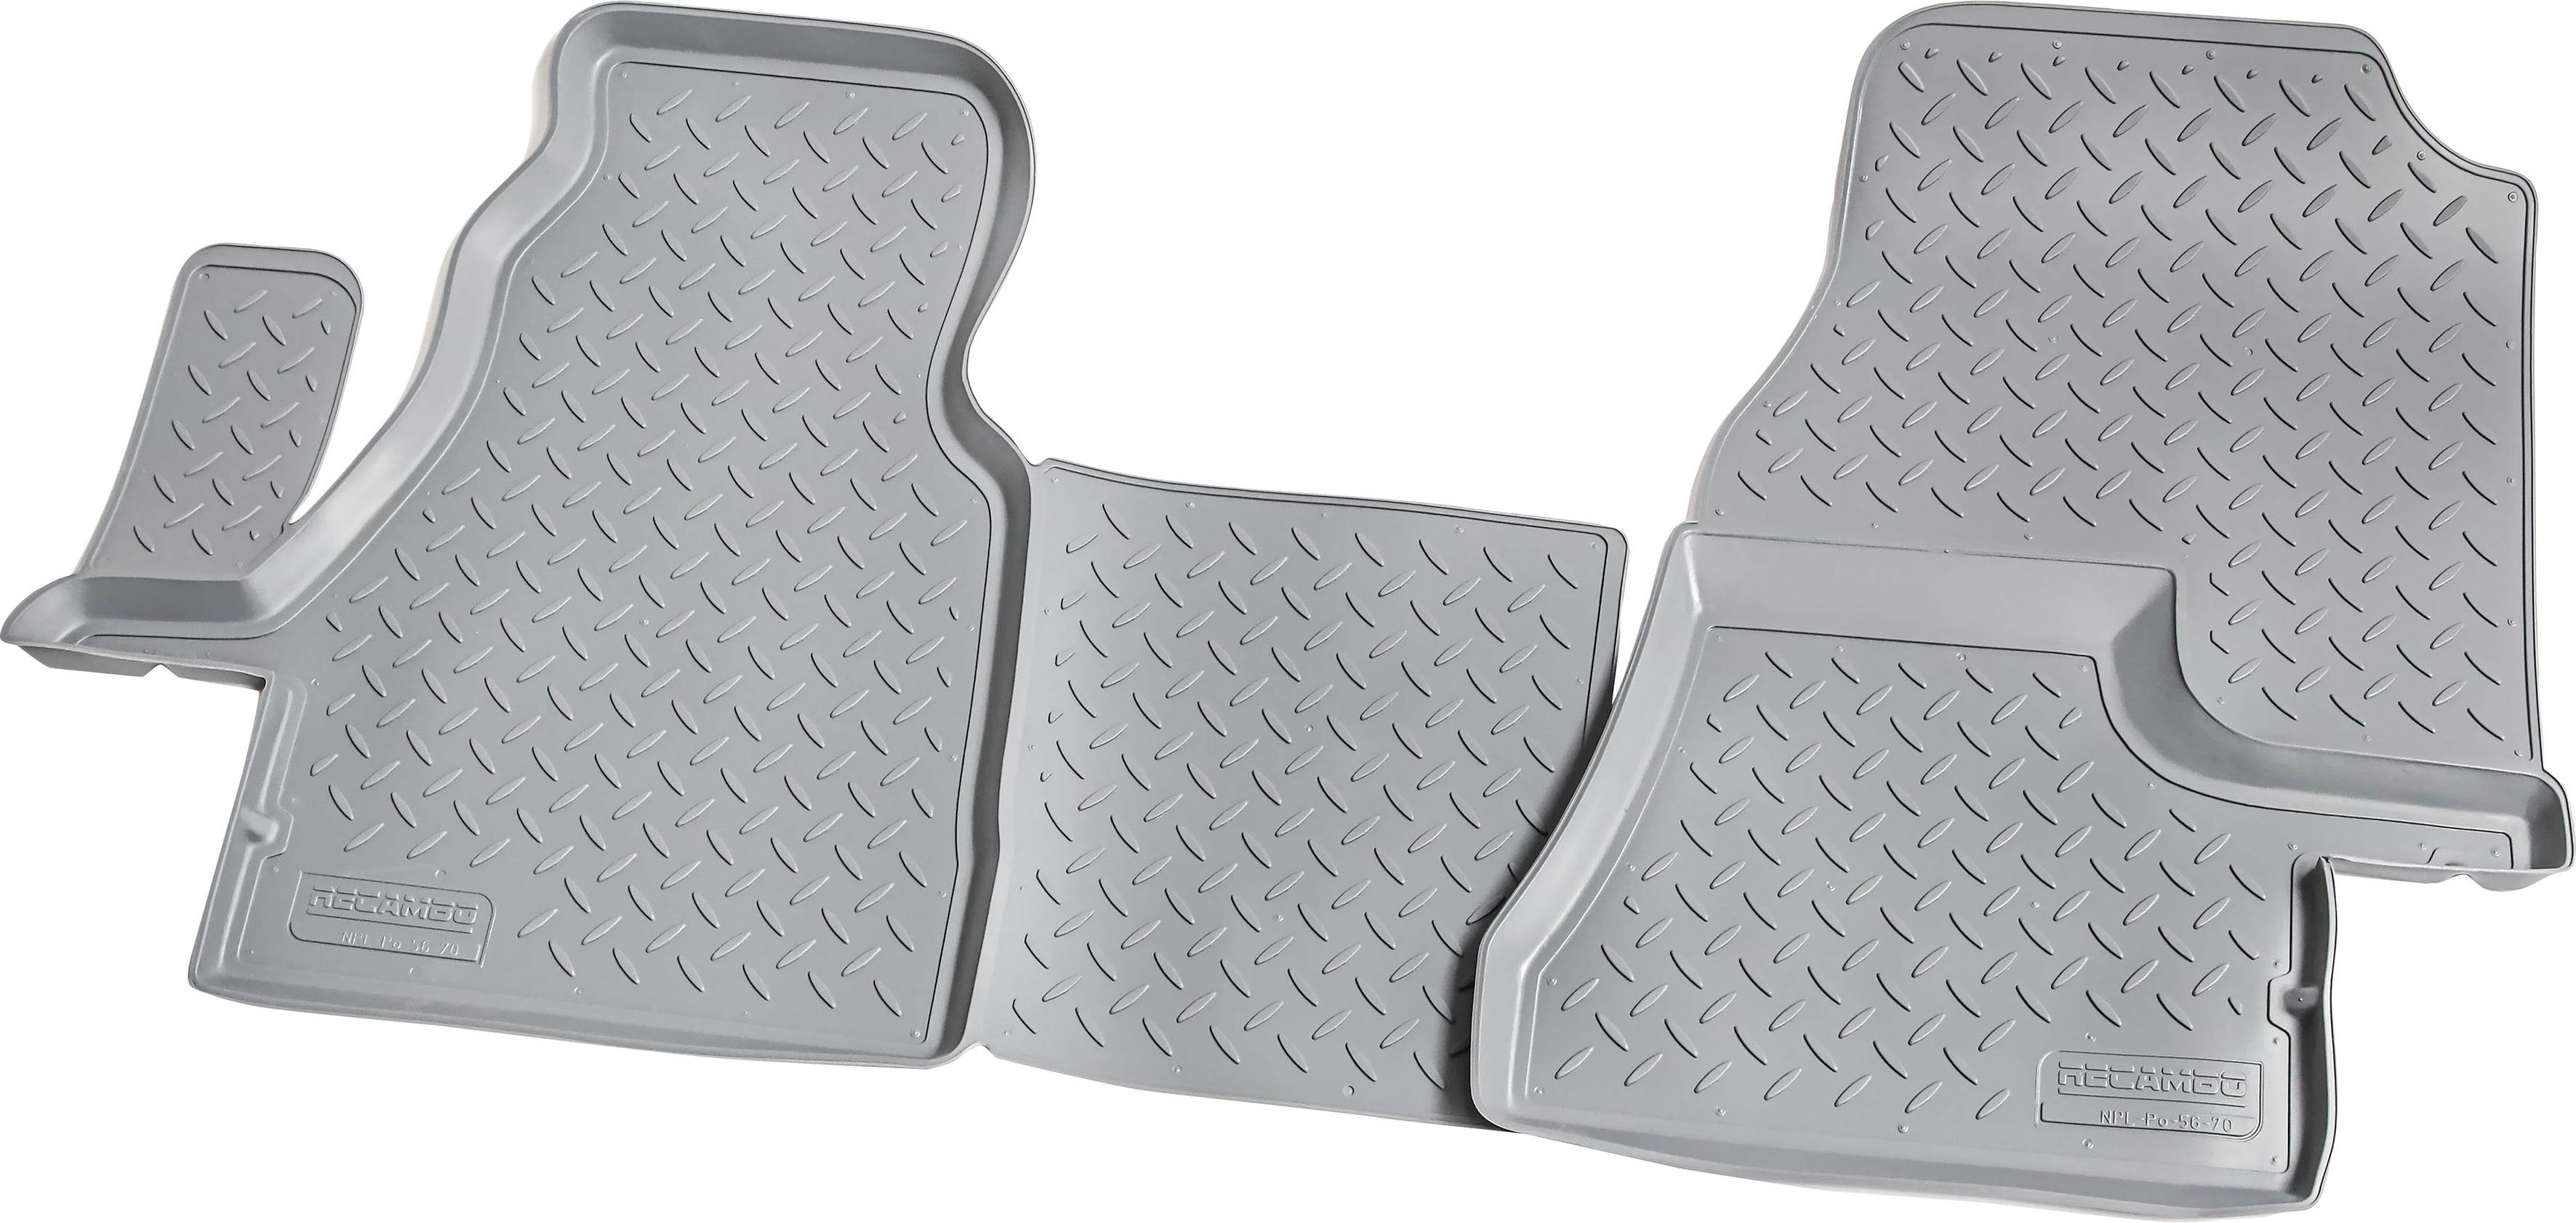 3D Gummi Fußmatten kompatibel für VW Crafter, BJ 2006 - 2016